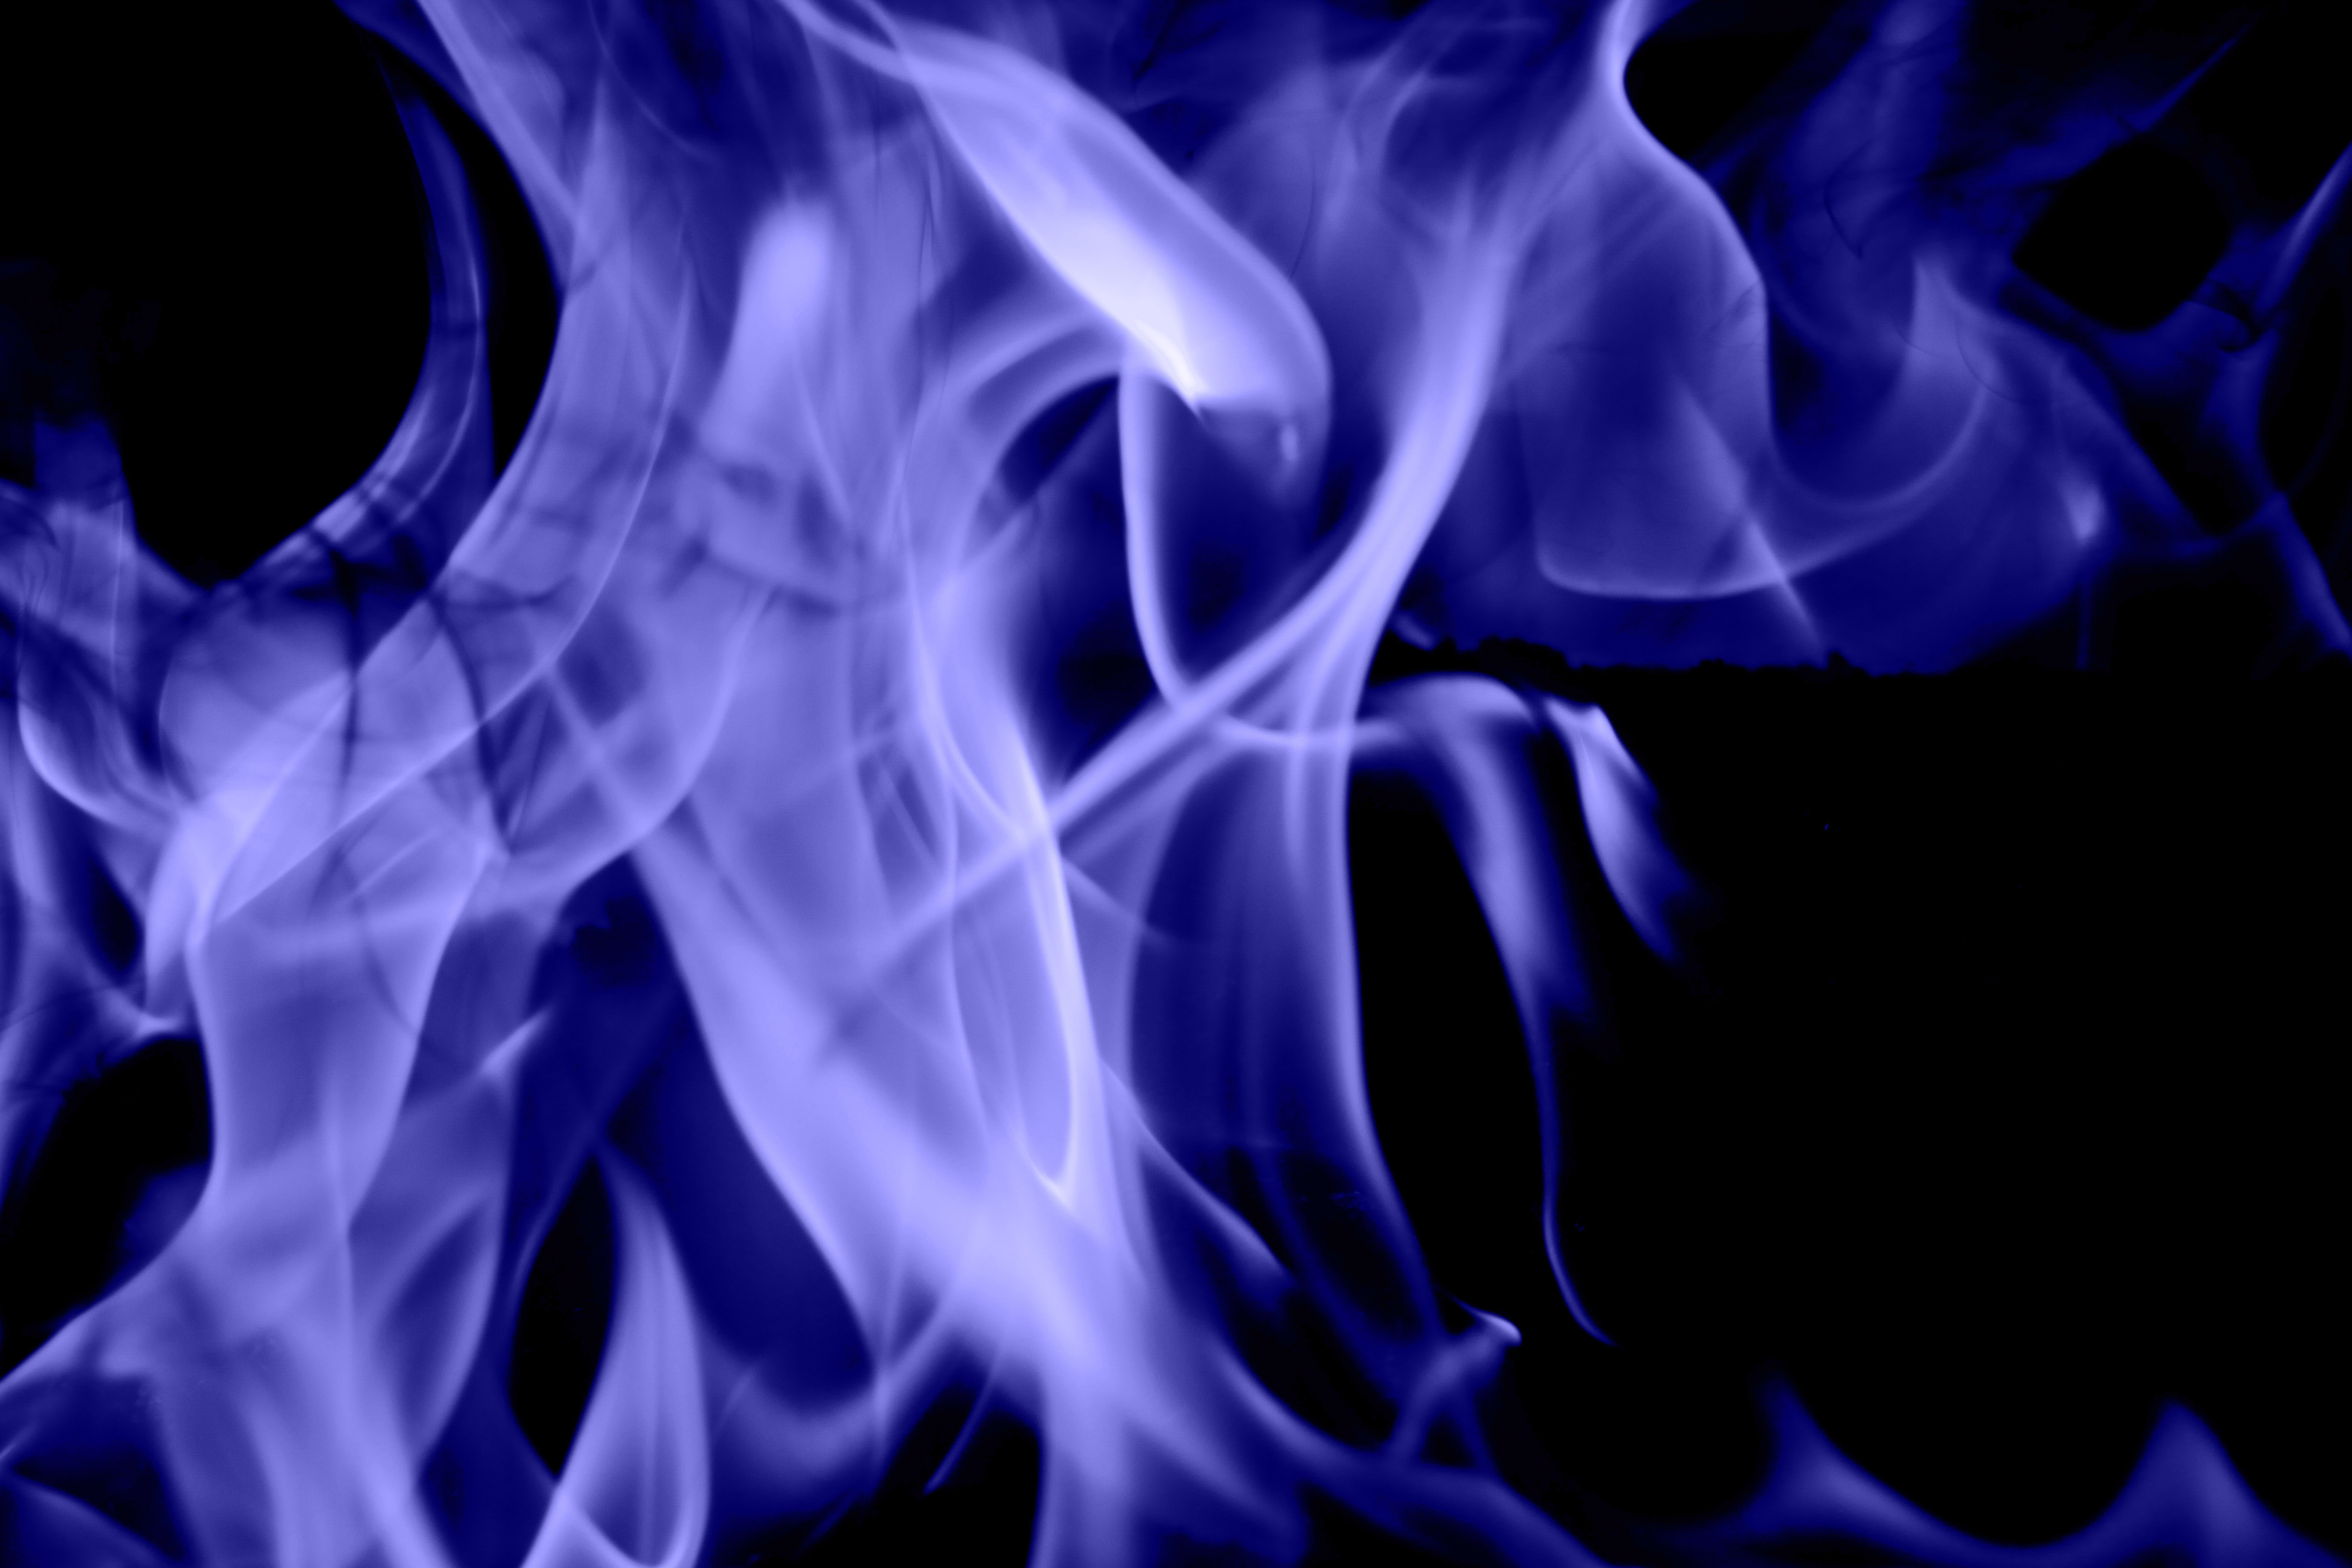  blue  flame texture slate fire  stock photo blaze fiery cool 